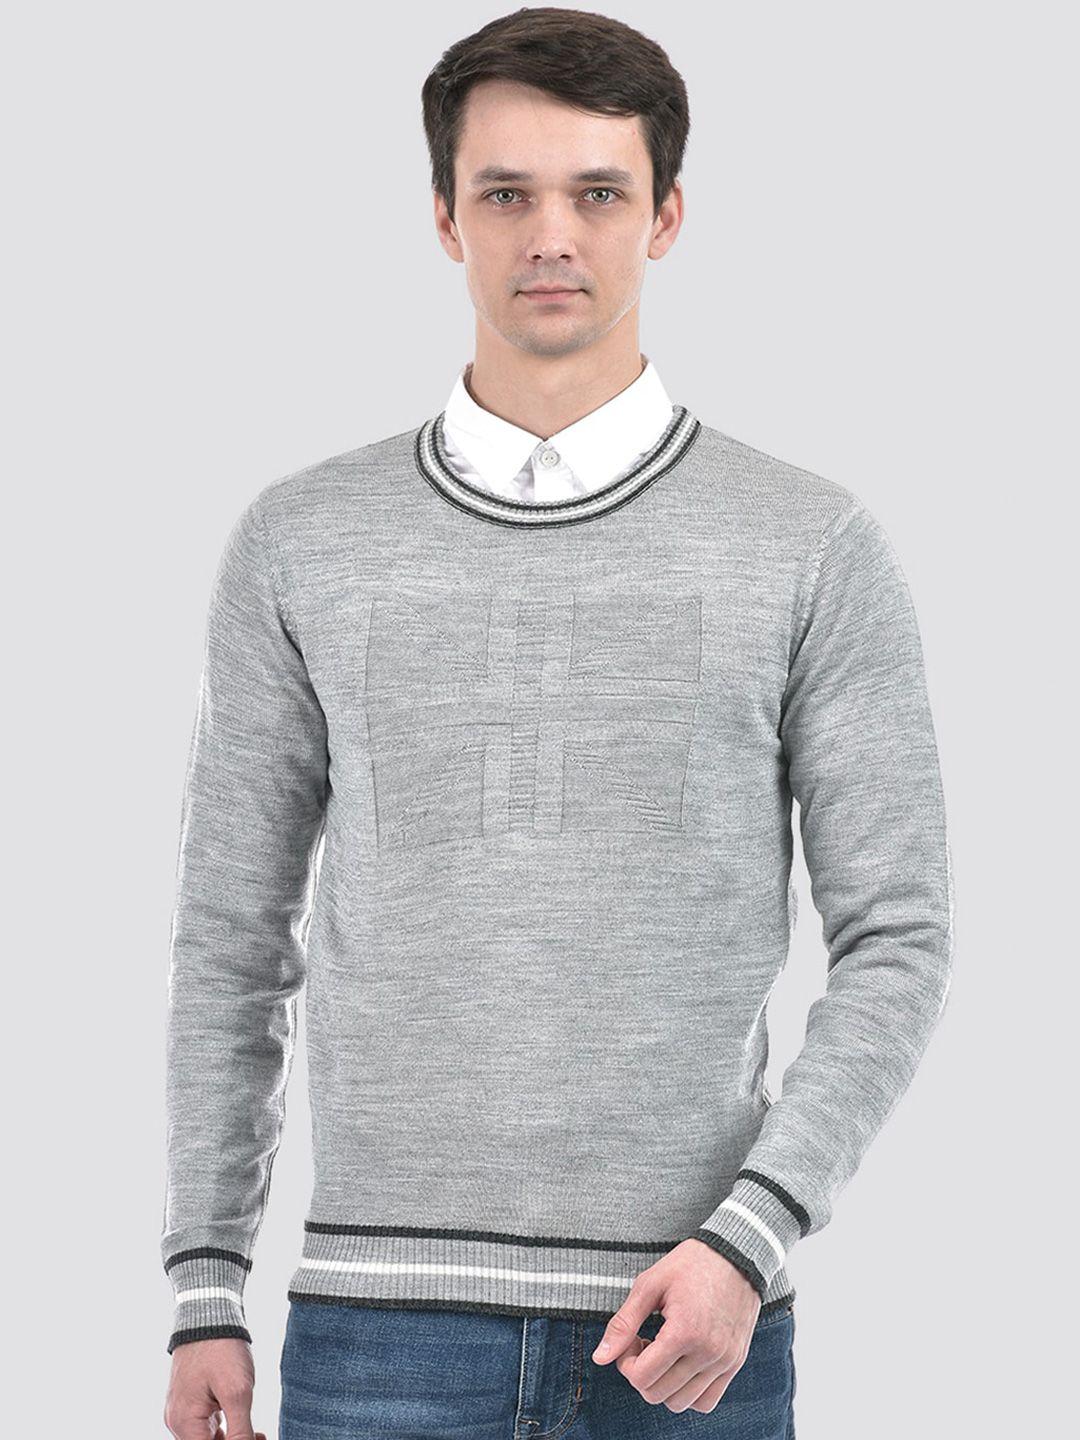 portobello self design textured acrylic pullover sweater